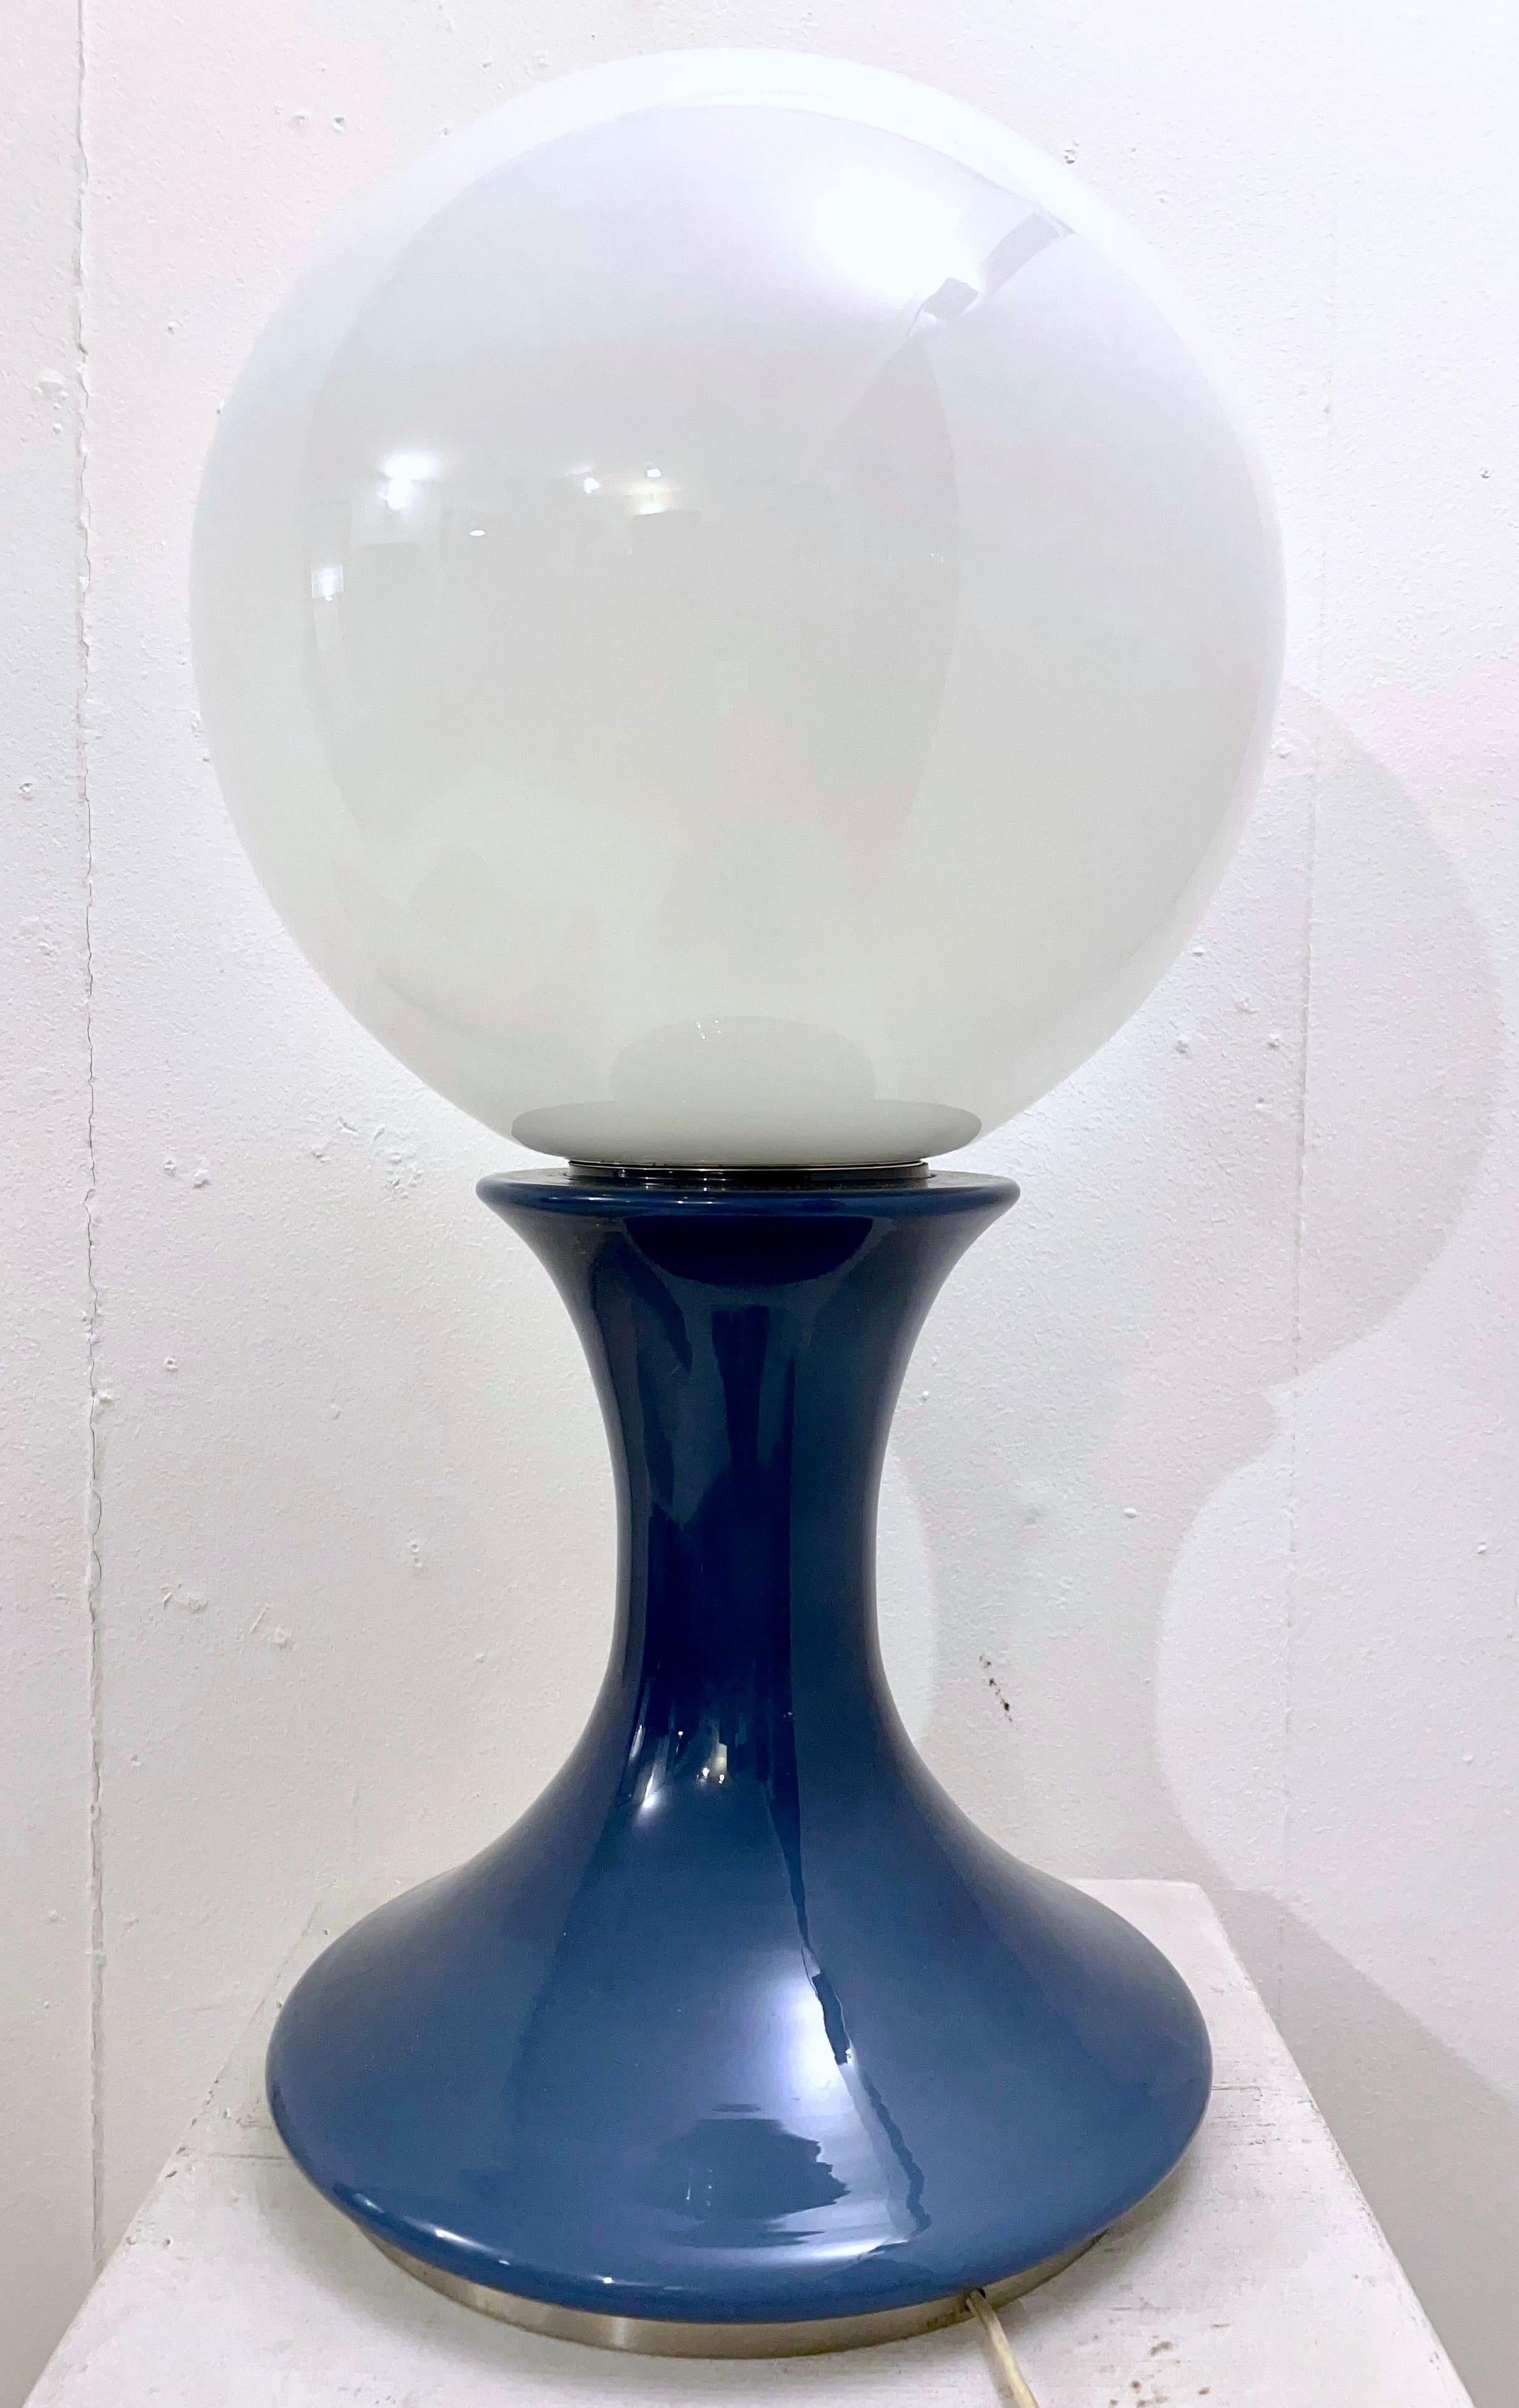 Mid-century blue murano glass table lamp by Carlo Nason - Italy 1960s.